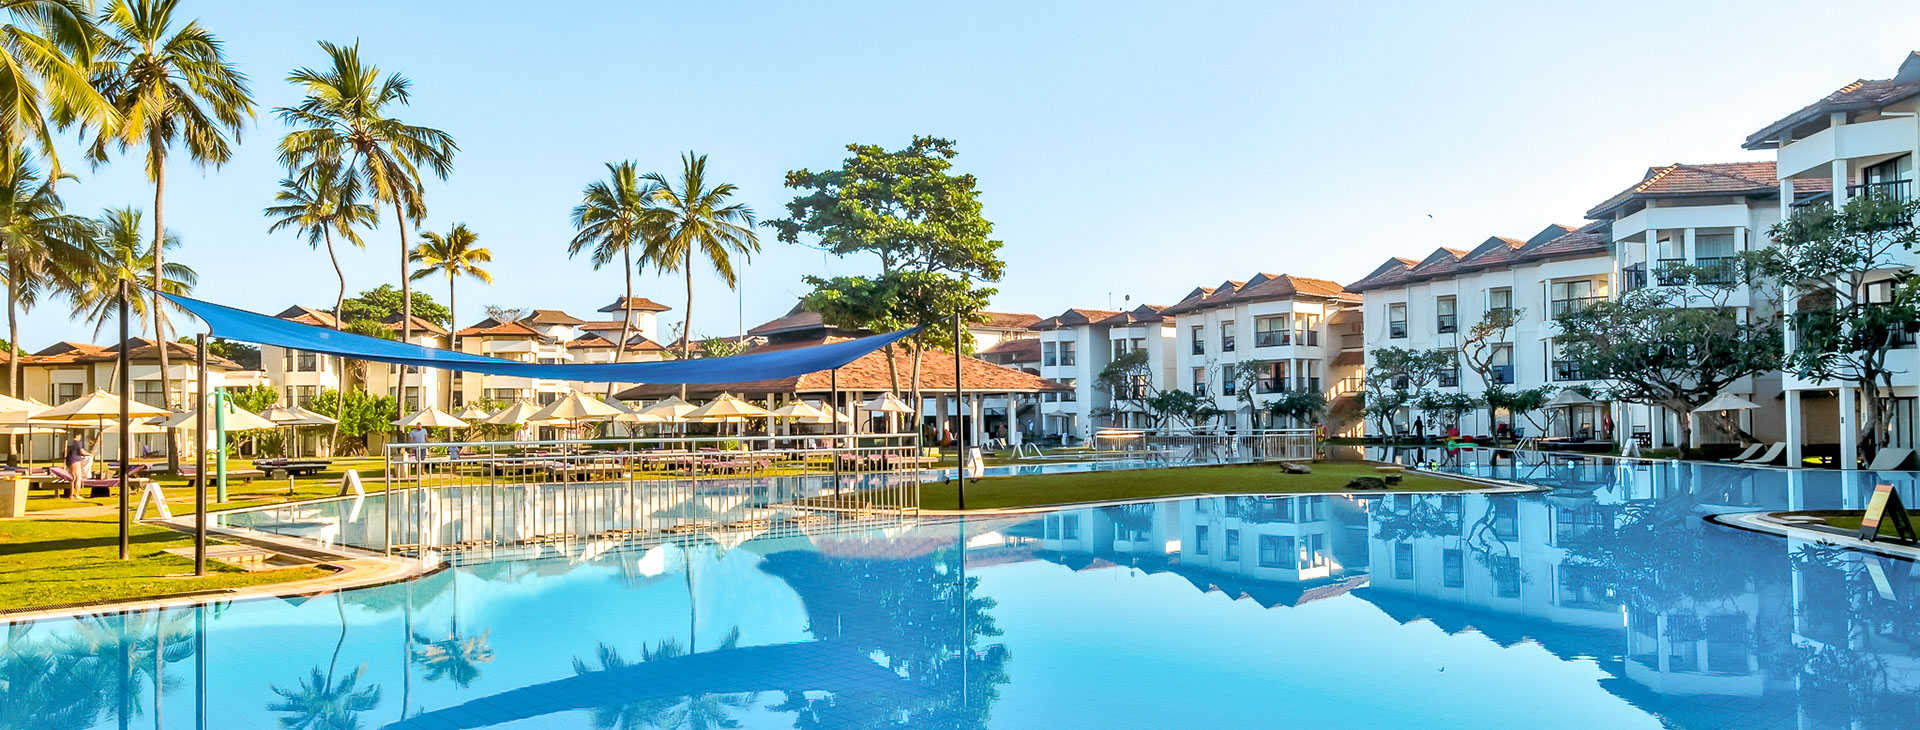 Club Hotel Dolphin - dovolená na Srí Lance Obrázek0